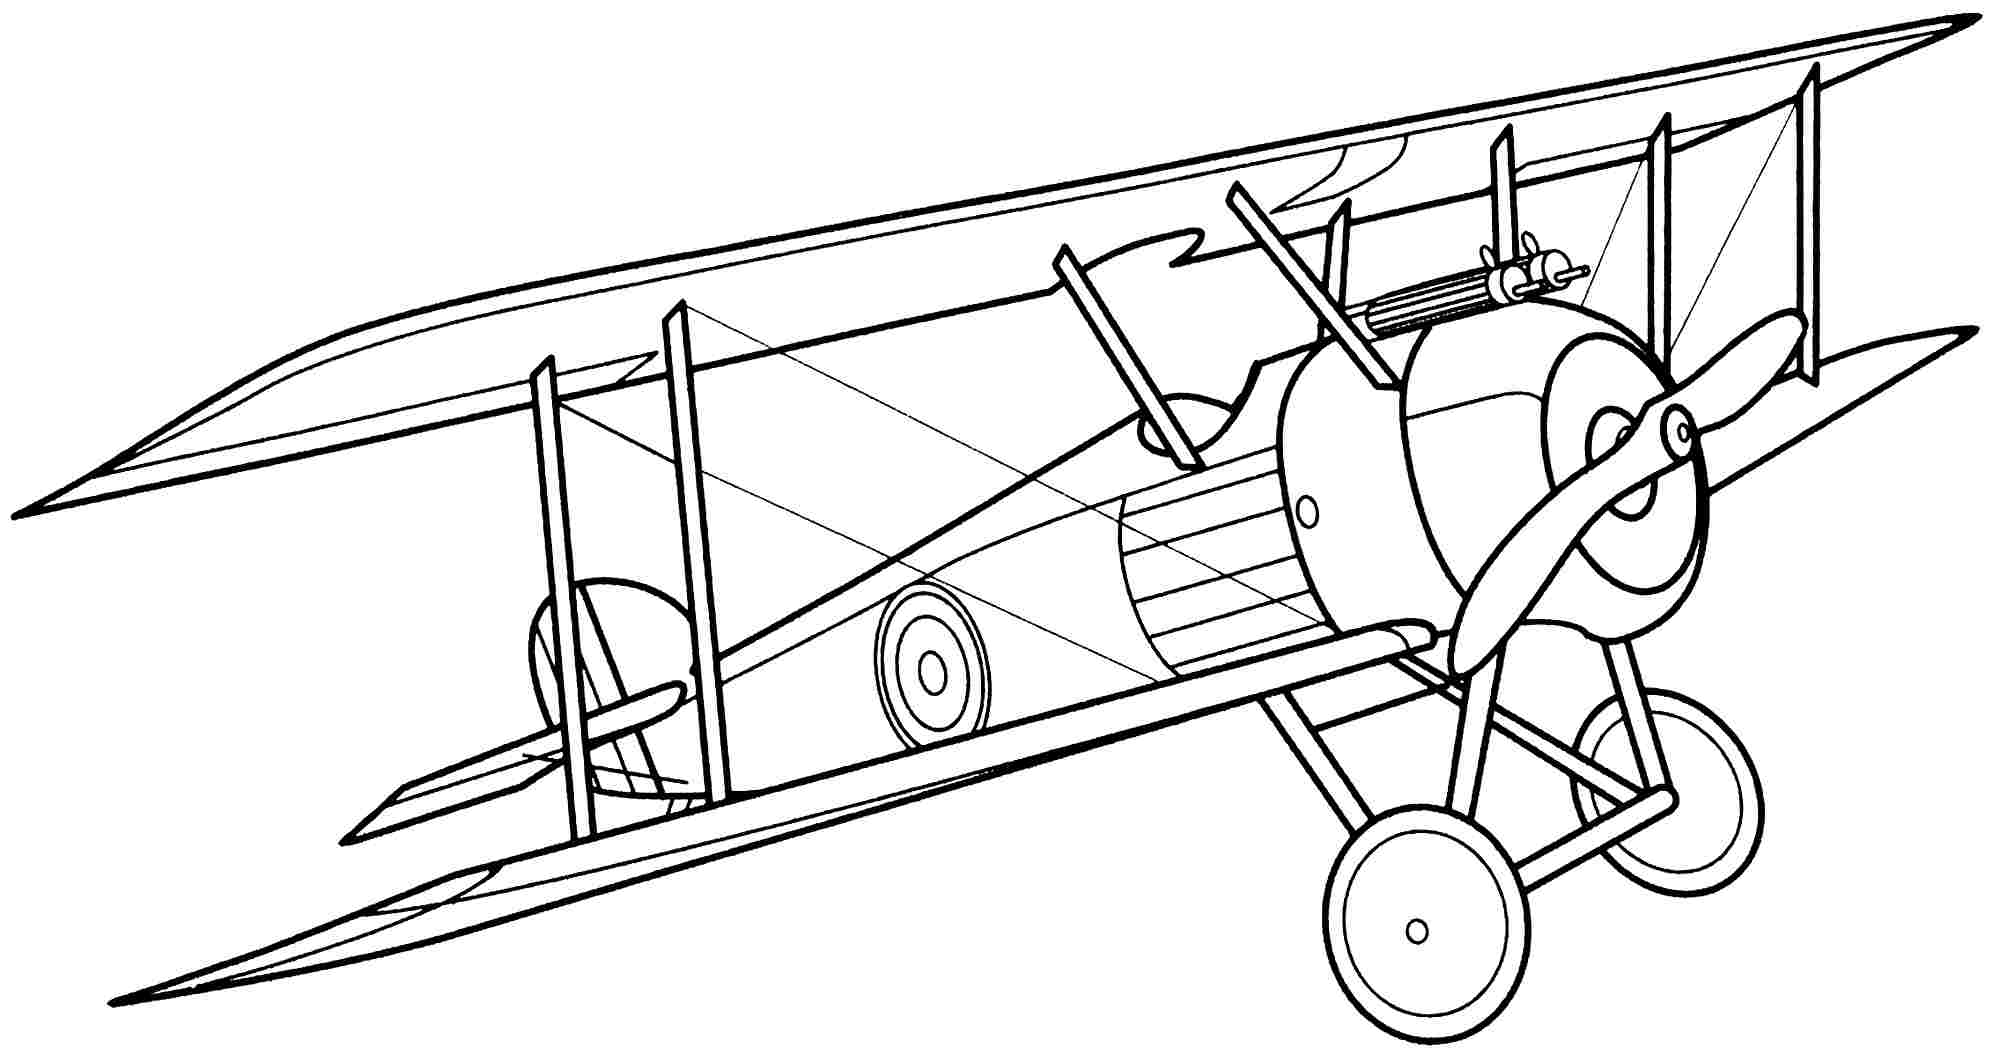 Airplane Outline Simple - Simple Airplane Drawing At Getdrawings ...